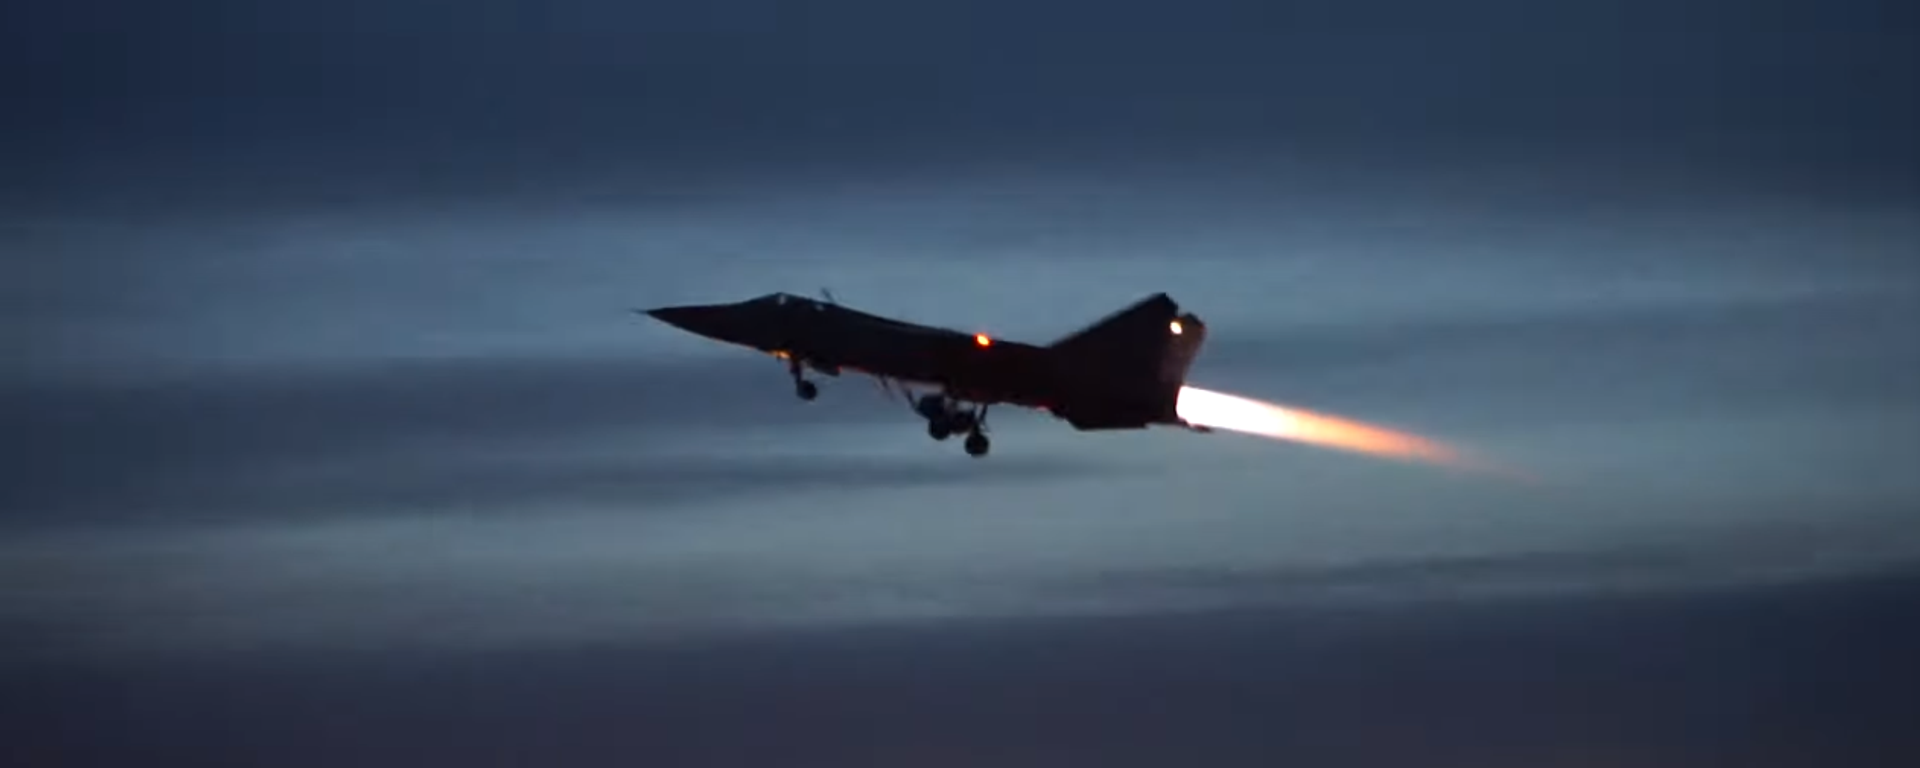 Los MiG-31 rusos realizan maniobras nocturnas en la estratosfera  - Sputnik Mundo, 1920, 25.01.2021